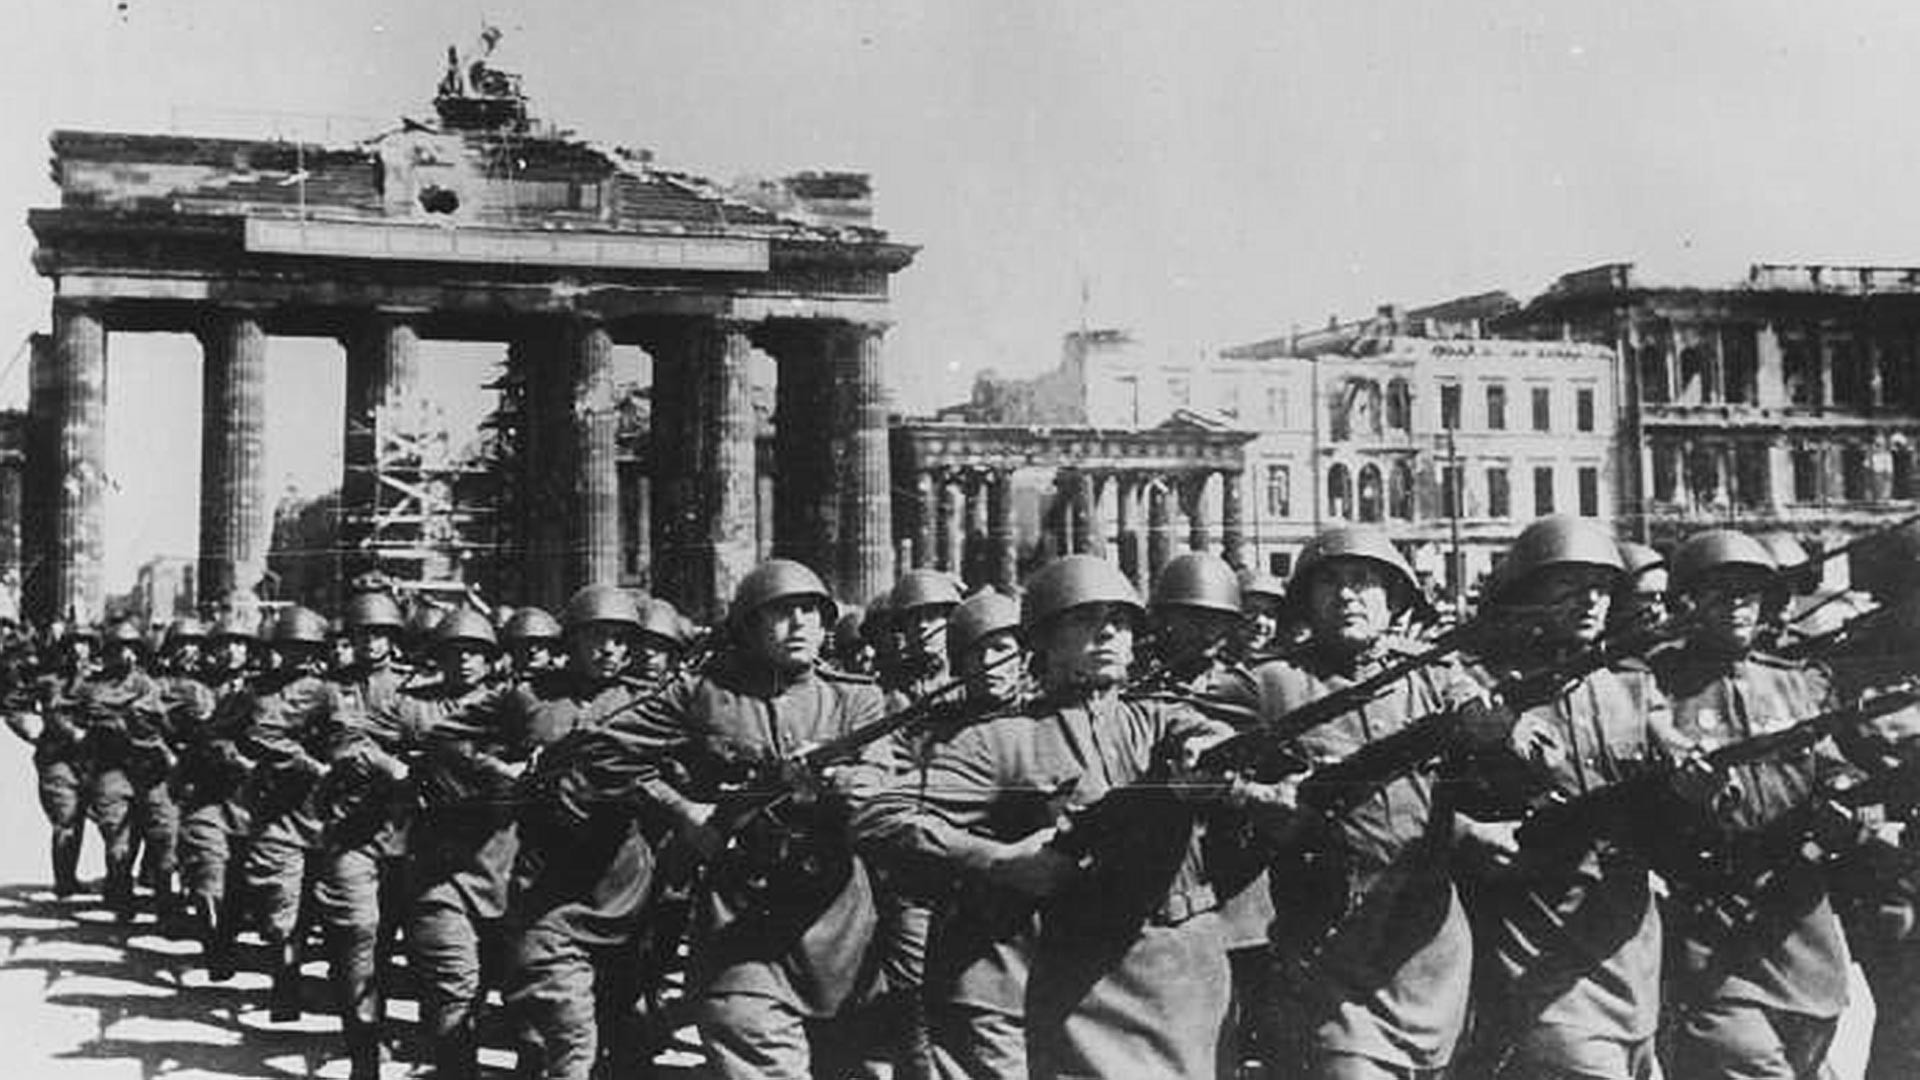 4 апреля 1945 года. Парад союзнических войск в Берлине 1945 года. Парад союзных войск в Берлине 7 сентября 1945. Парад Победы в Берлине 4 мая 1945 года. Парад у Бранденбургских ворот 1945.